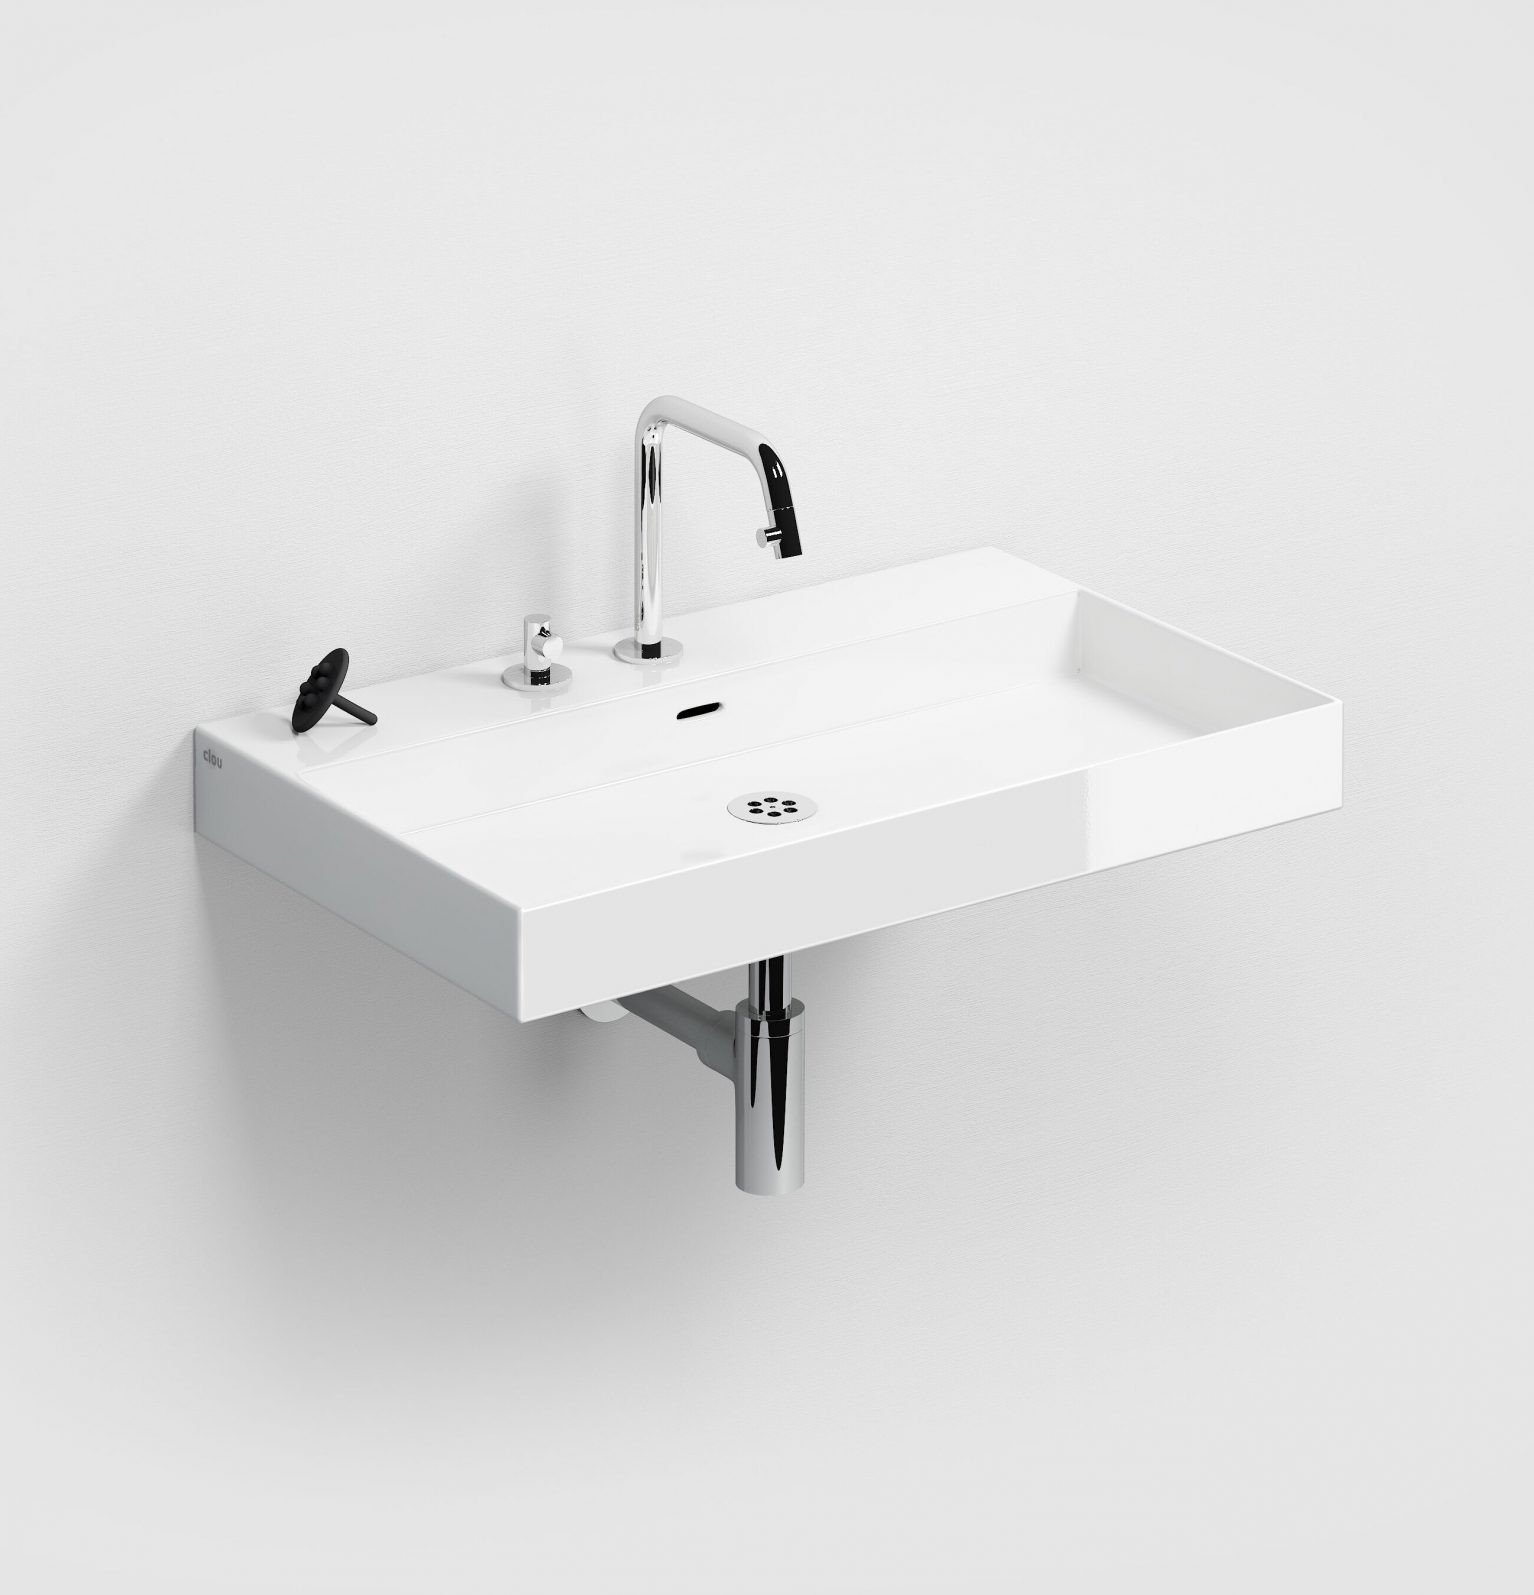 badkamerkast-wit-aluite-toilet-badkamer-luxe-sanitair-Frame-New-WashMe-clou-CL074100755-mat-70cm-badkamermeubel-wastafelonderkast-inleg-planchet-Sp-shadow-CL074910721-CL0201432